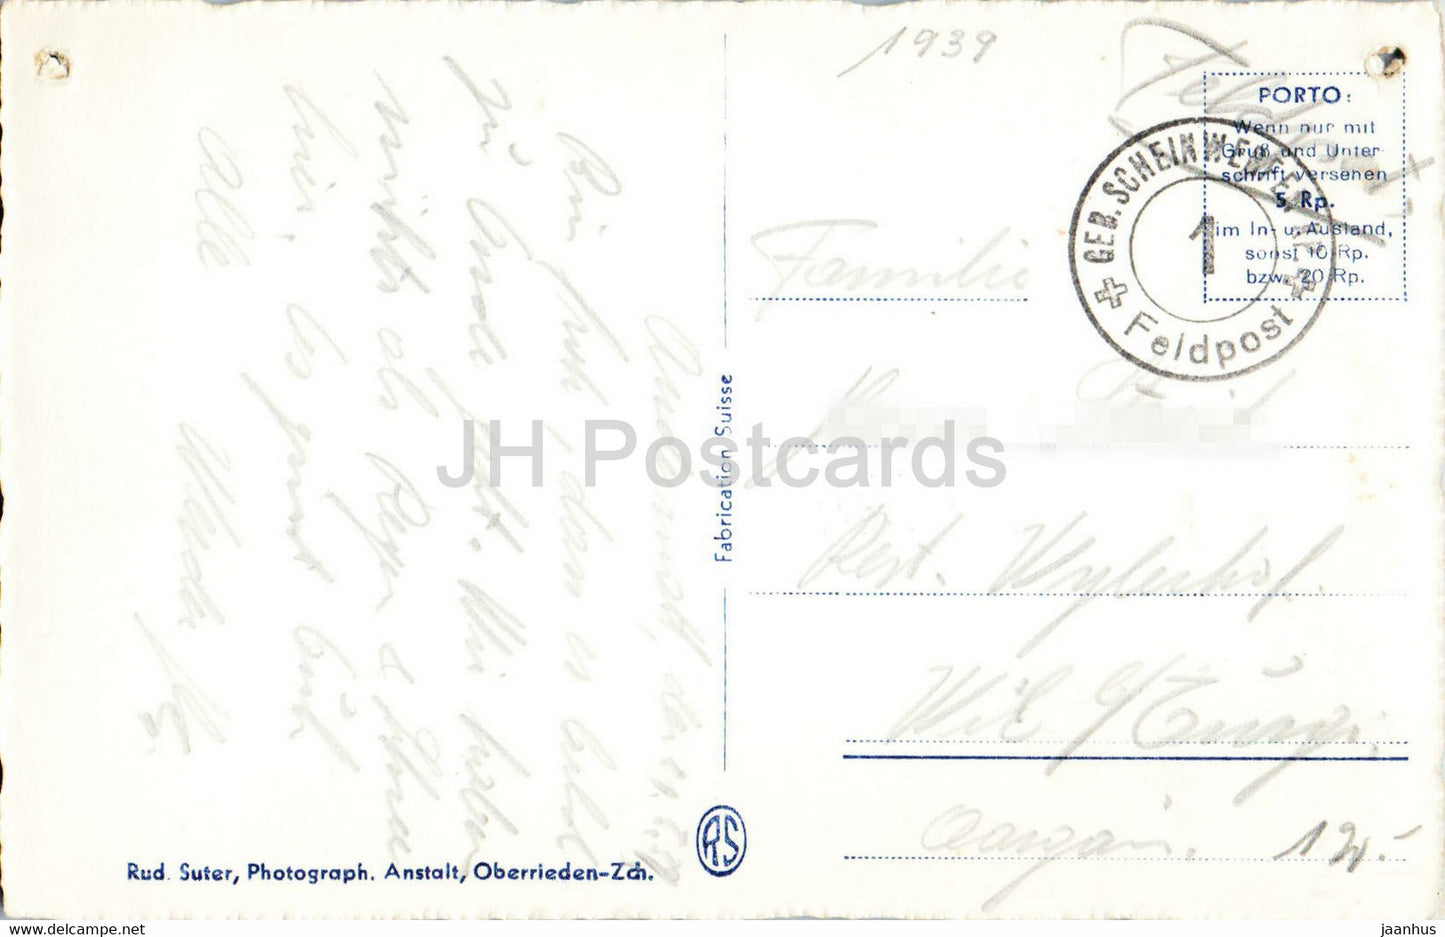 Andermatt - 908 - Feldpost - courrier militaire - carte postale ancienne - 1939 - Suisse - inutilisé